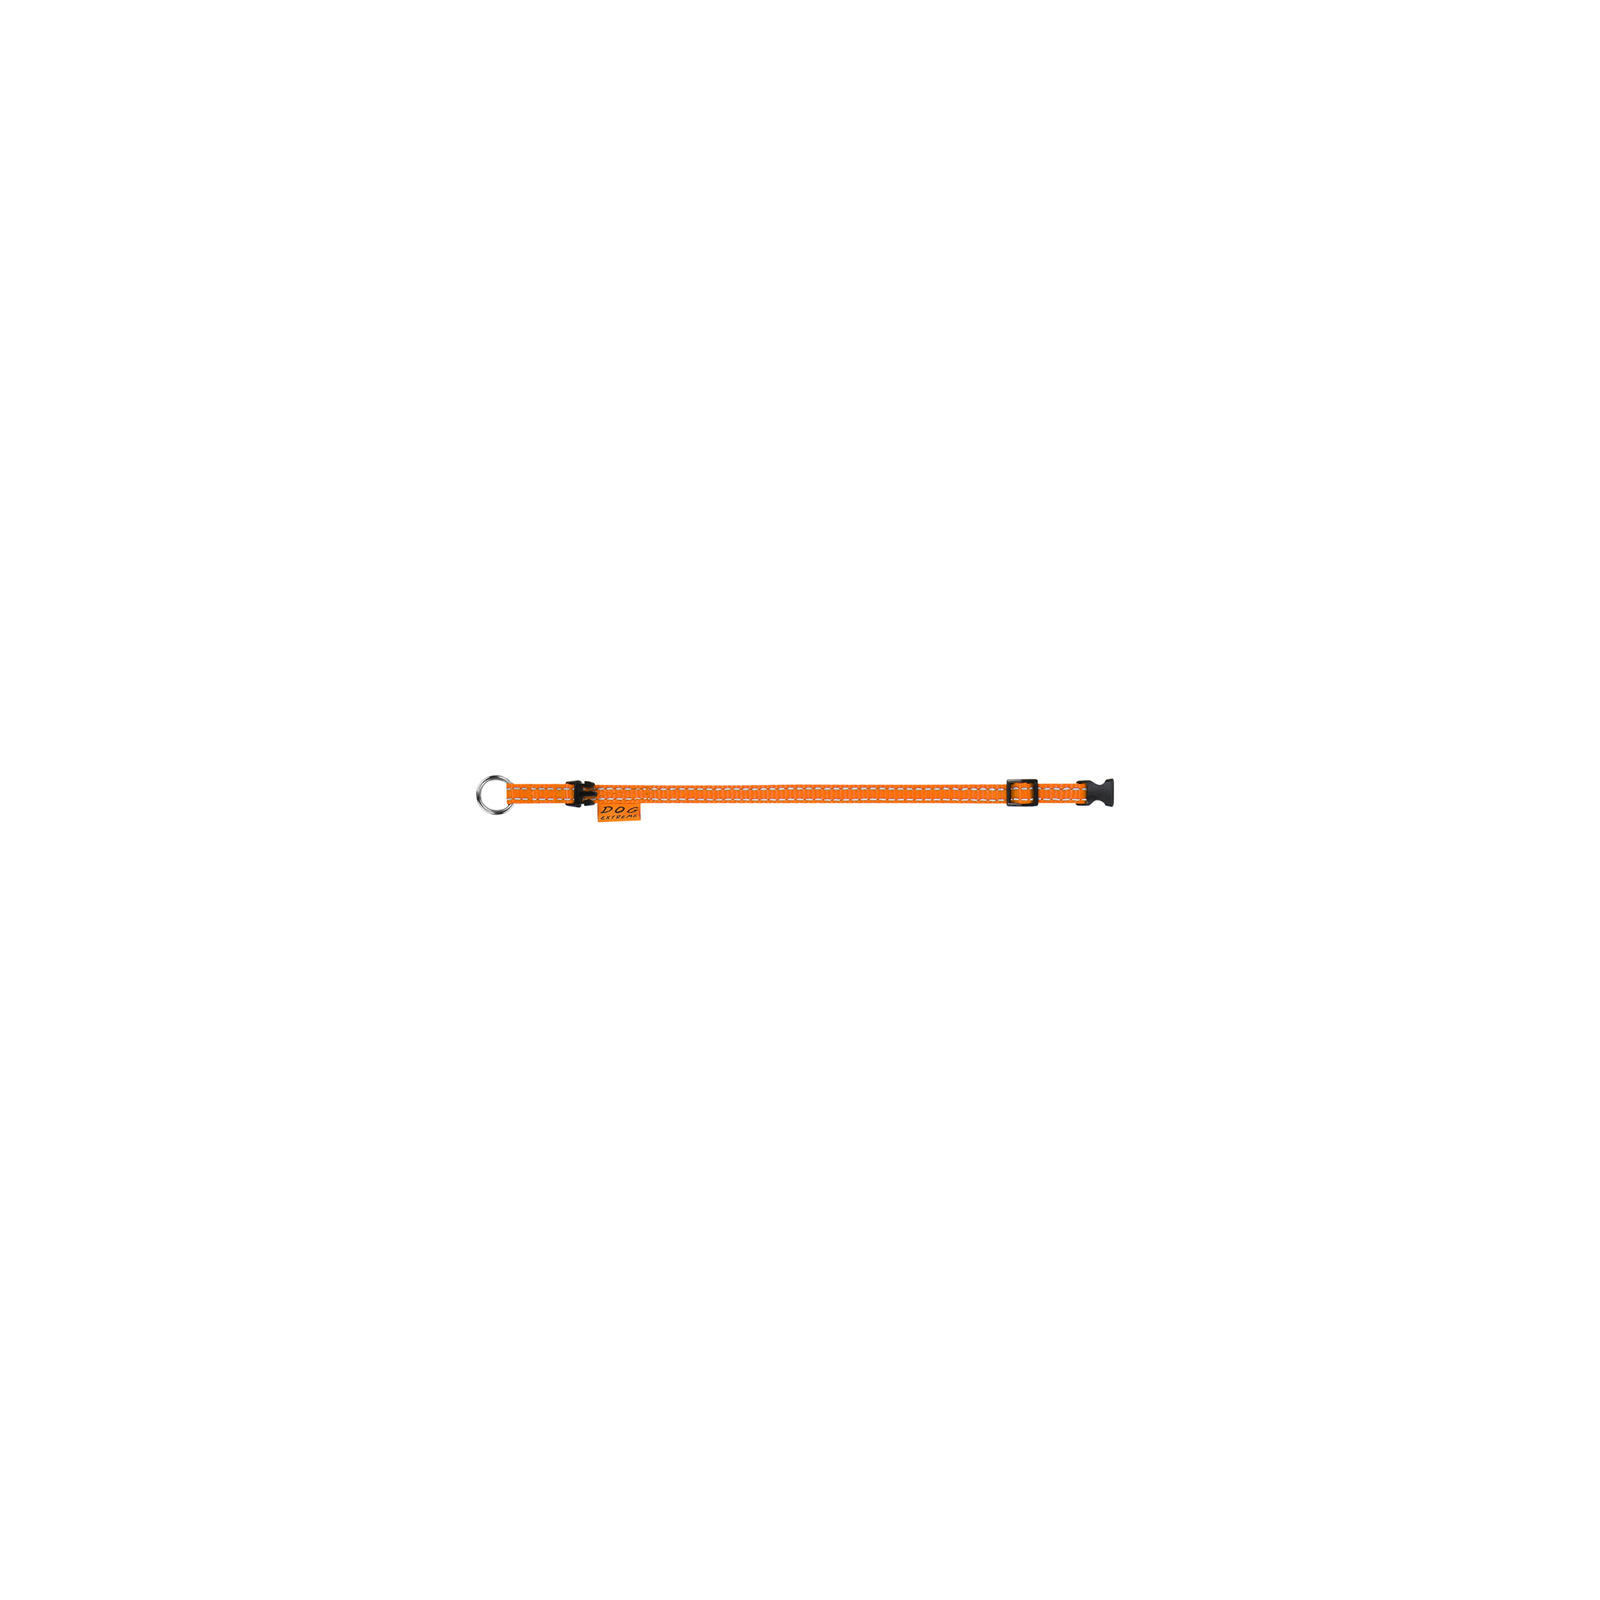 Ошейник для животных Dog Extreme из нейлона регулируемый Ш 14 мм Д 23-35 см оранжевый (01574) изображение 3